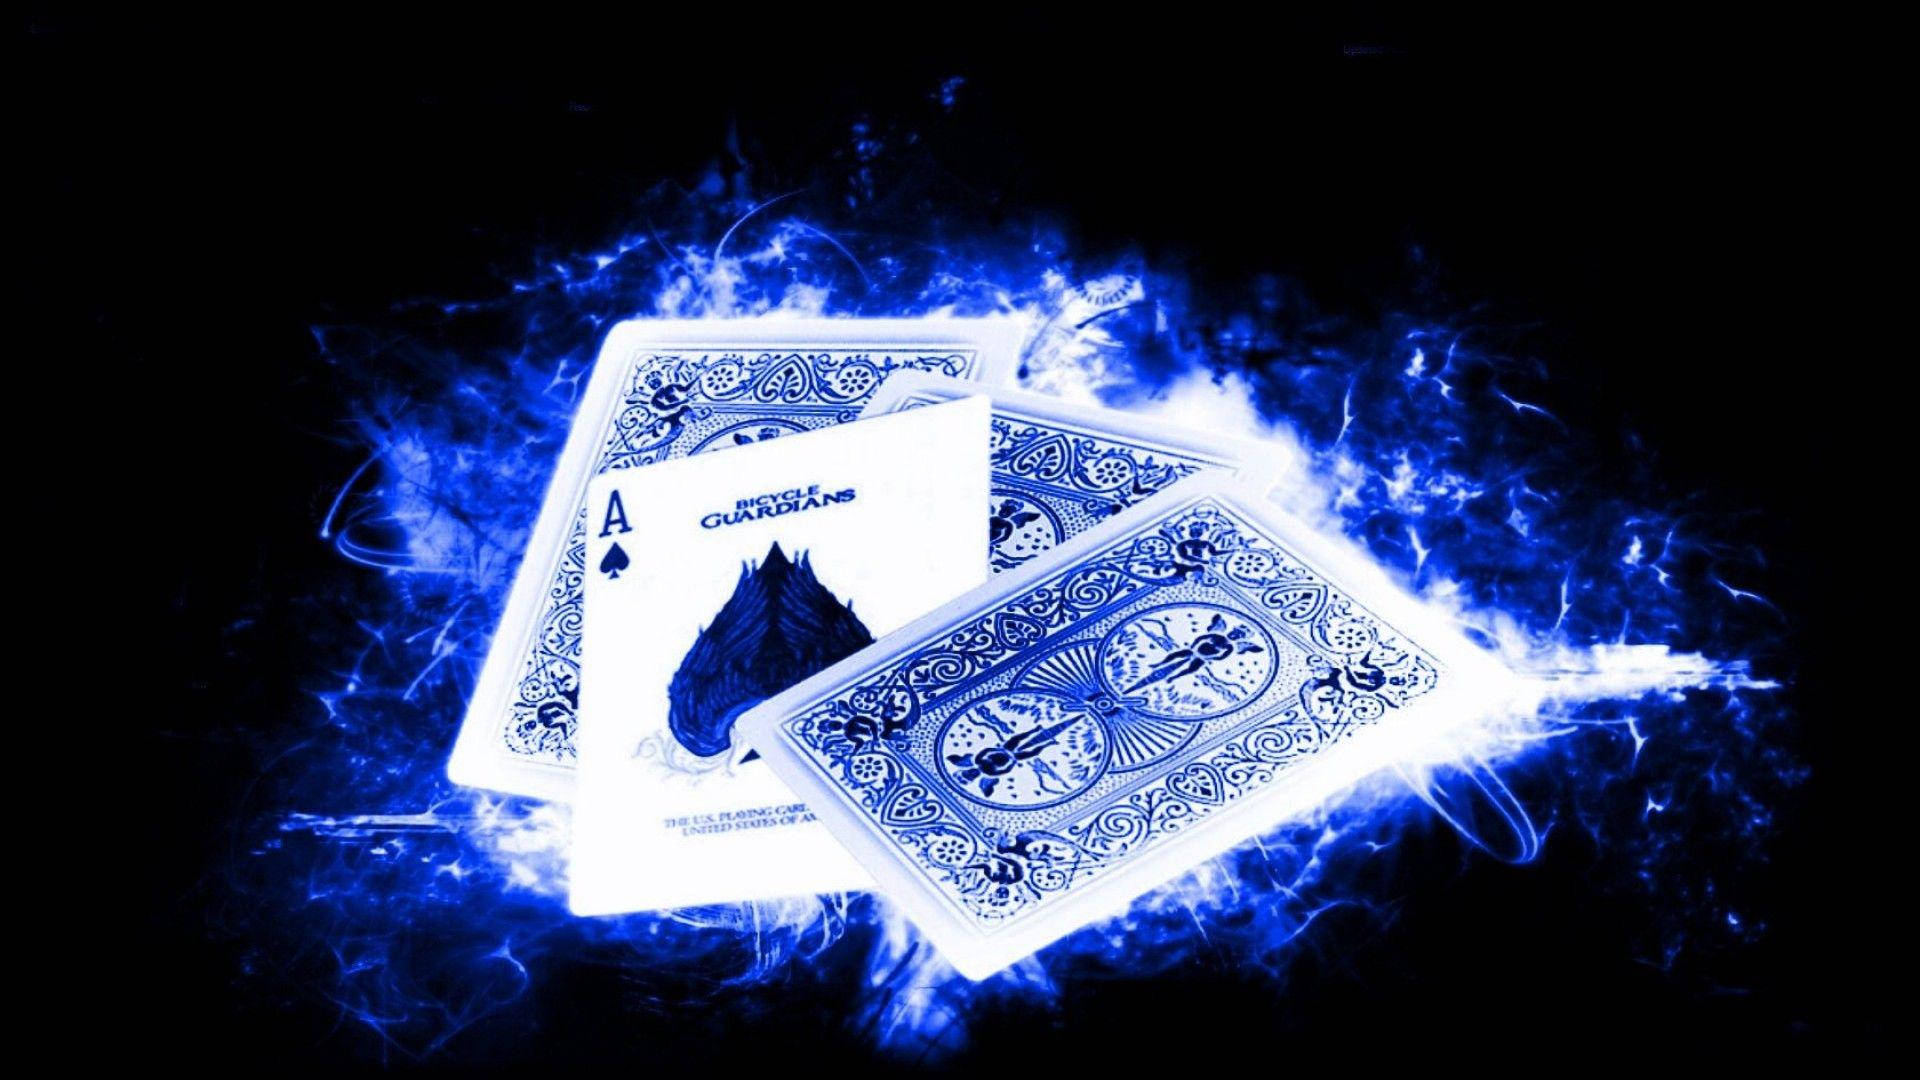 Einkartenspiel Mit Blauen Flammen (